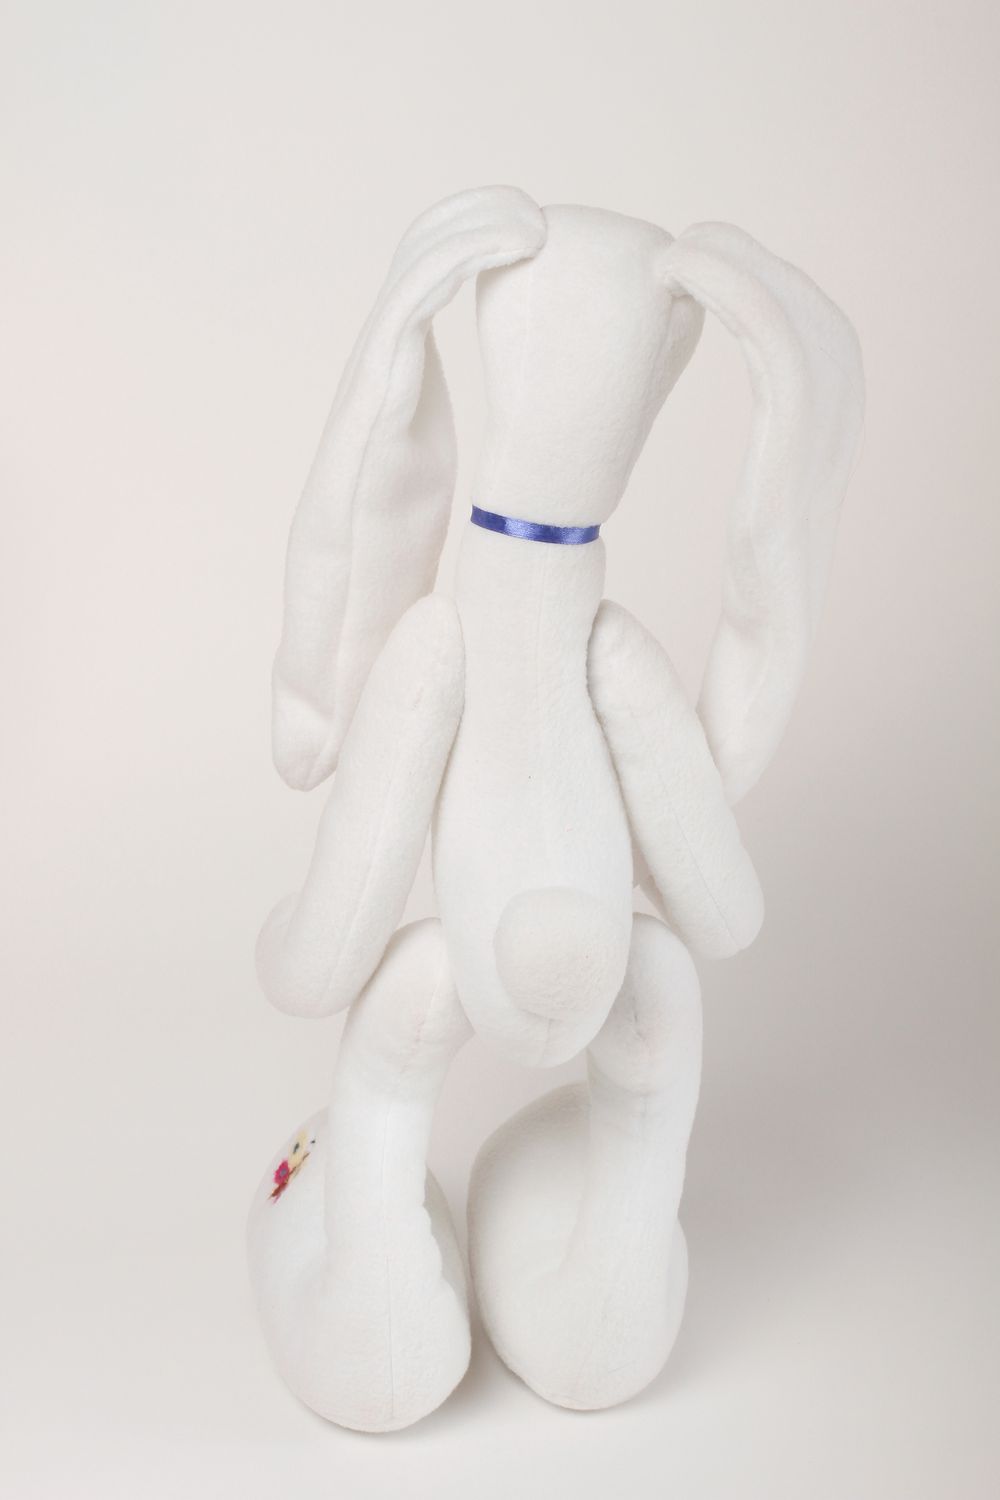 Juguete de peluche artesanal muñeco para niños elemento decorativo conejo blanco foto 3